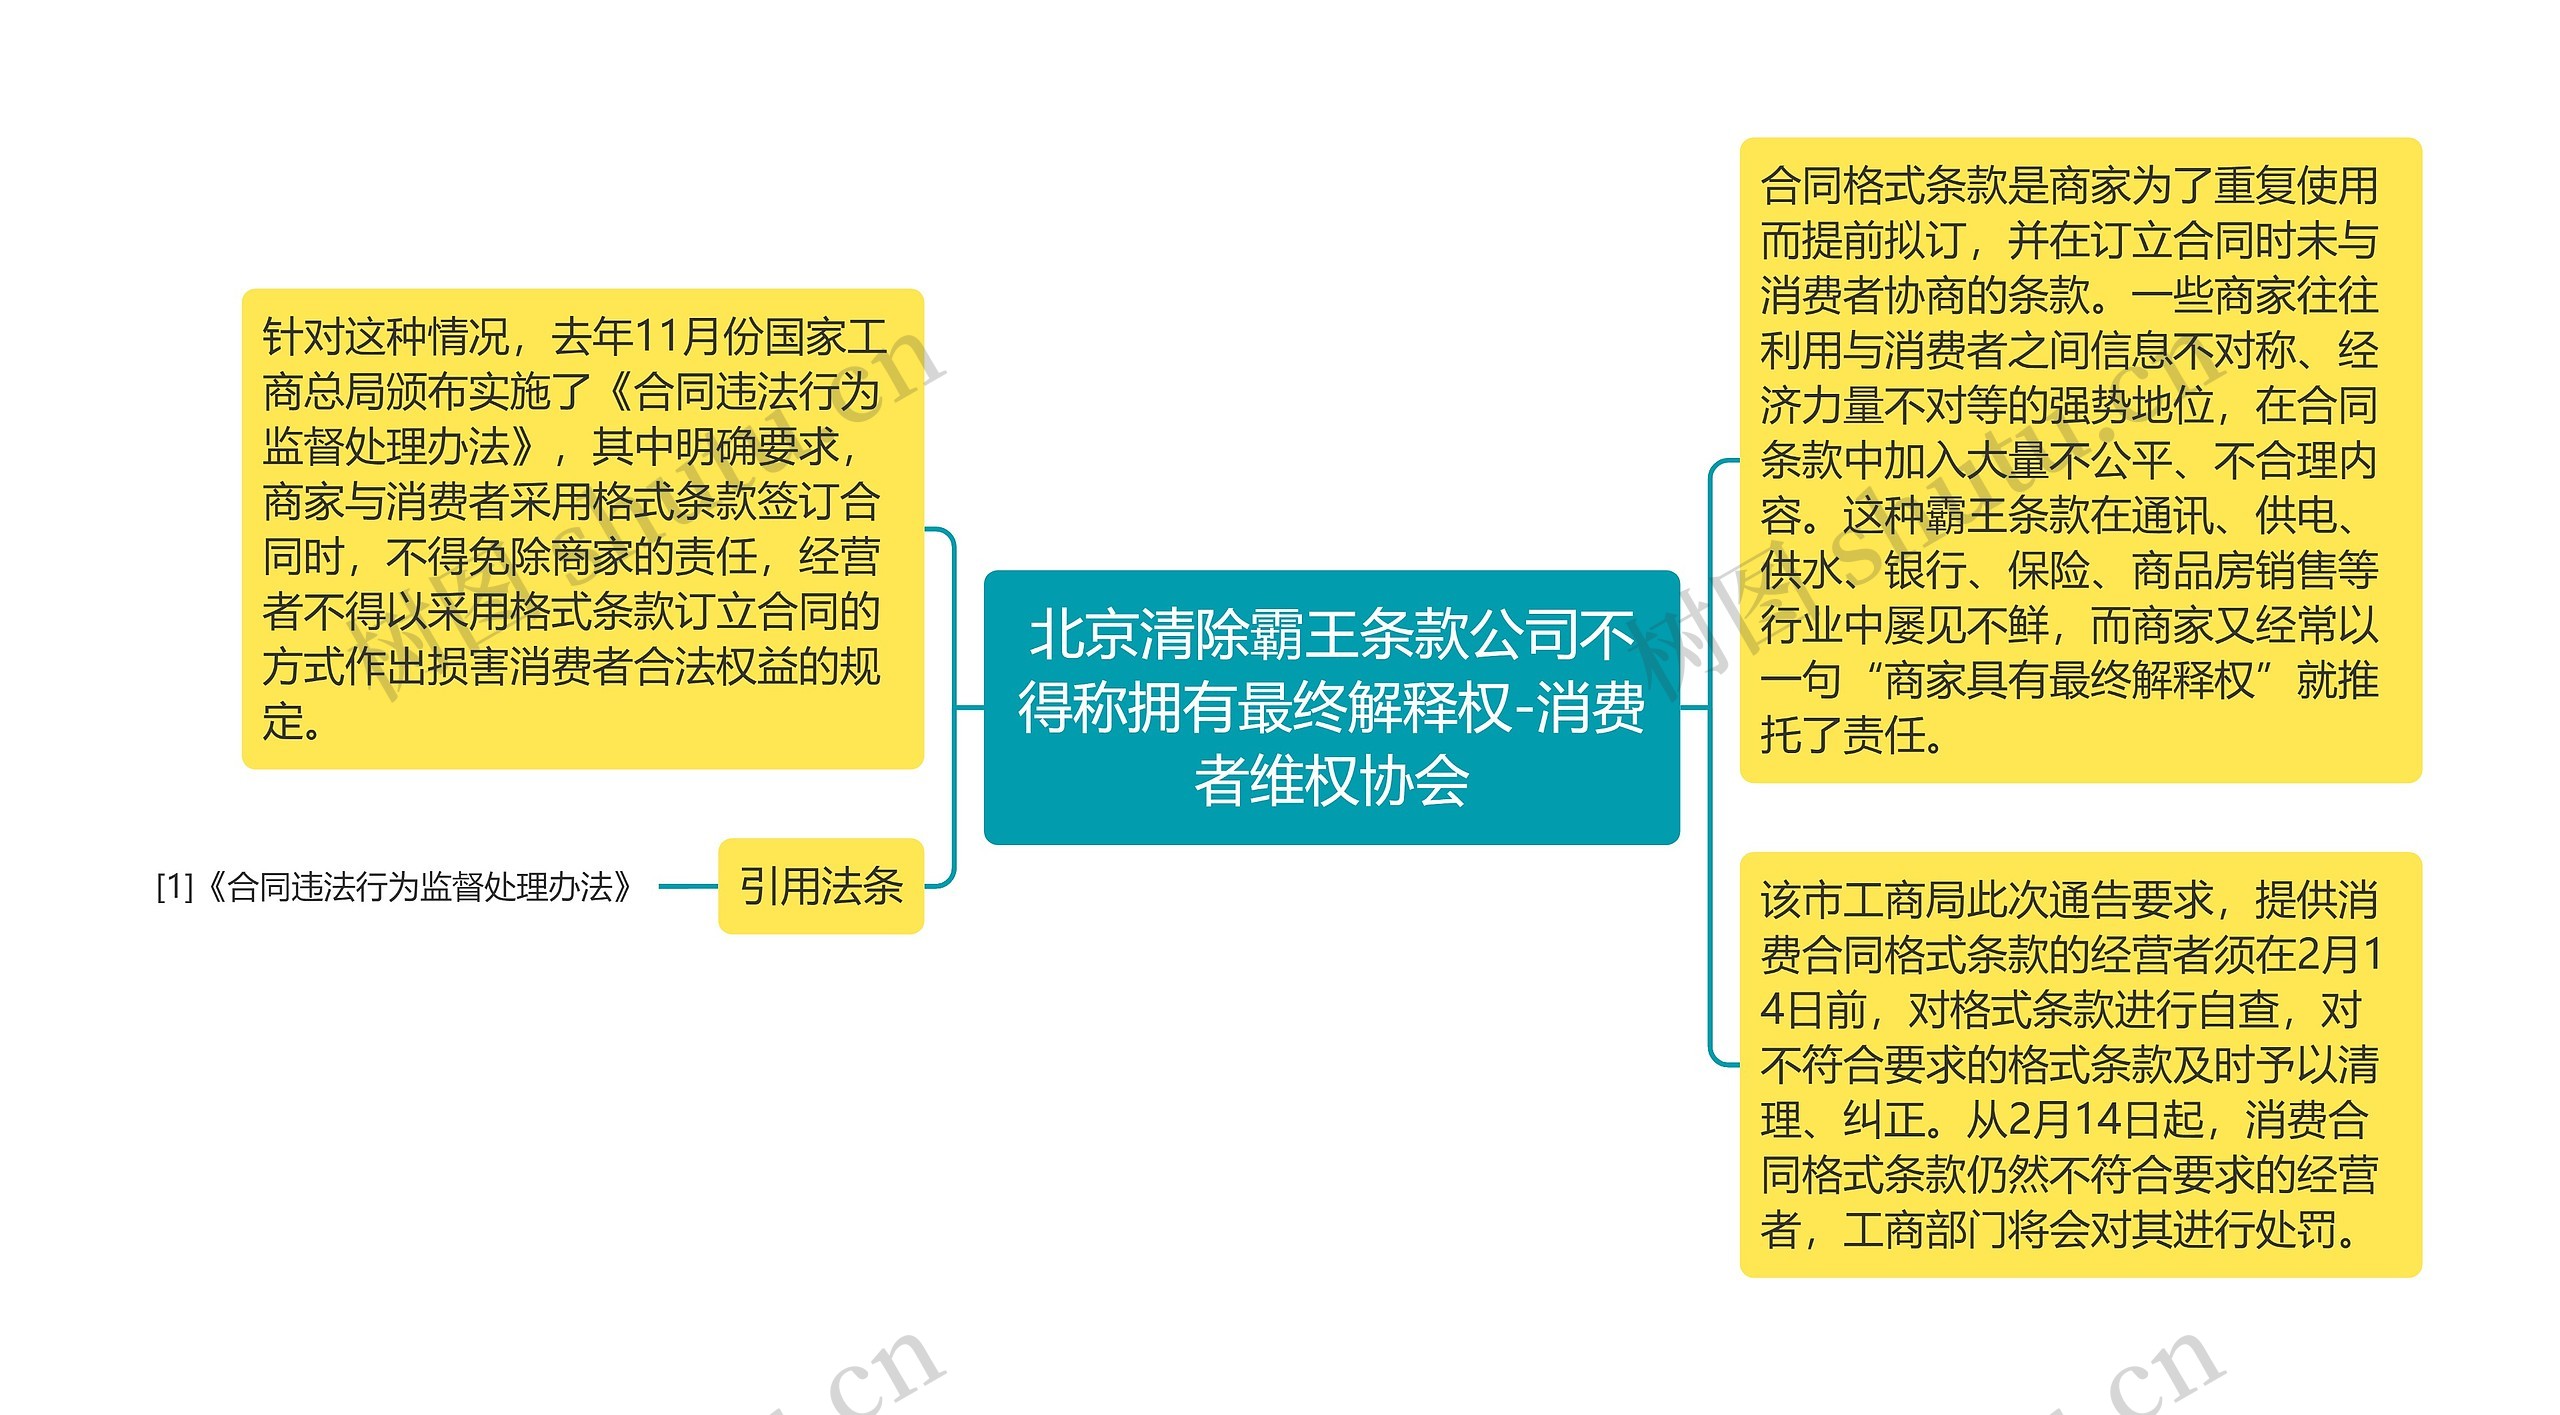 北京清除霸王条款公司不得称拥有最终解释权-消费者维权协会